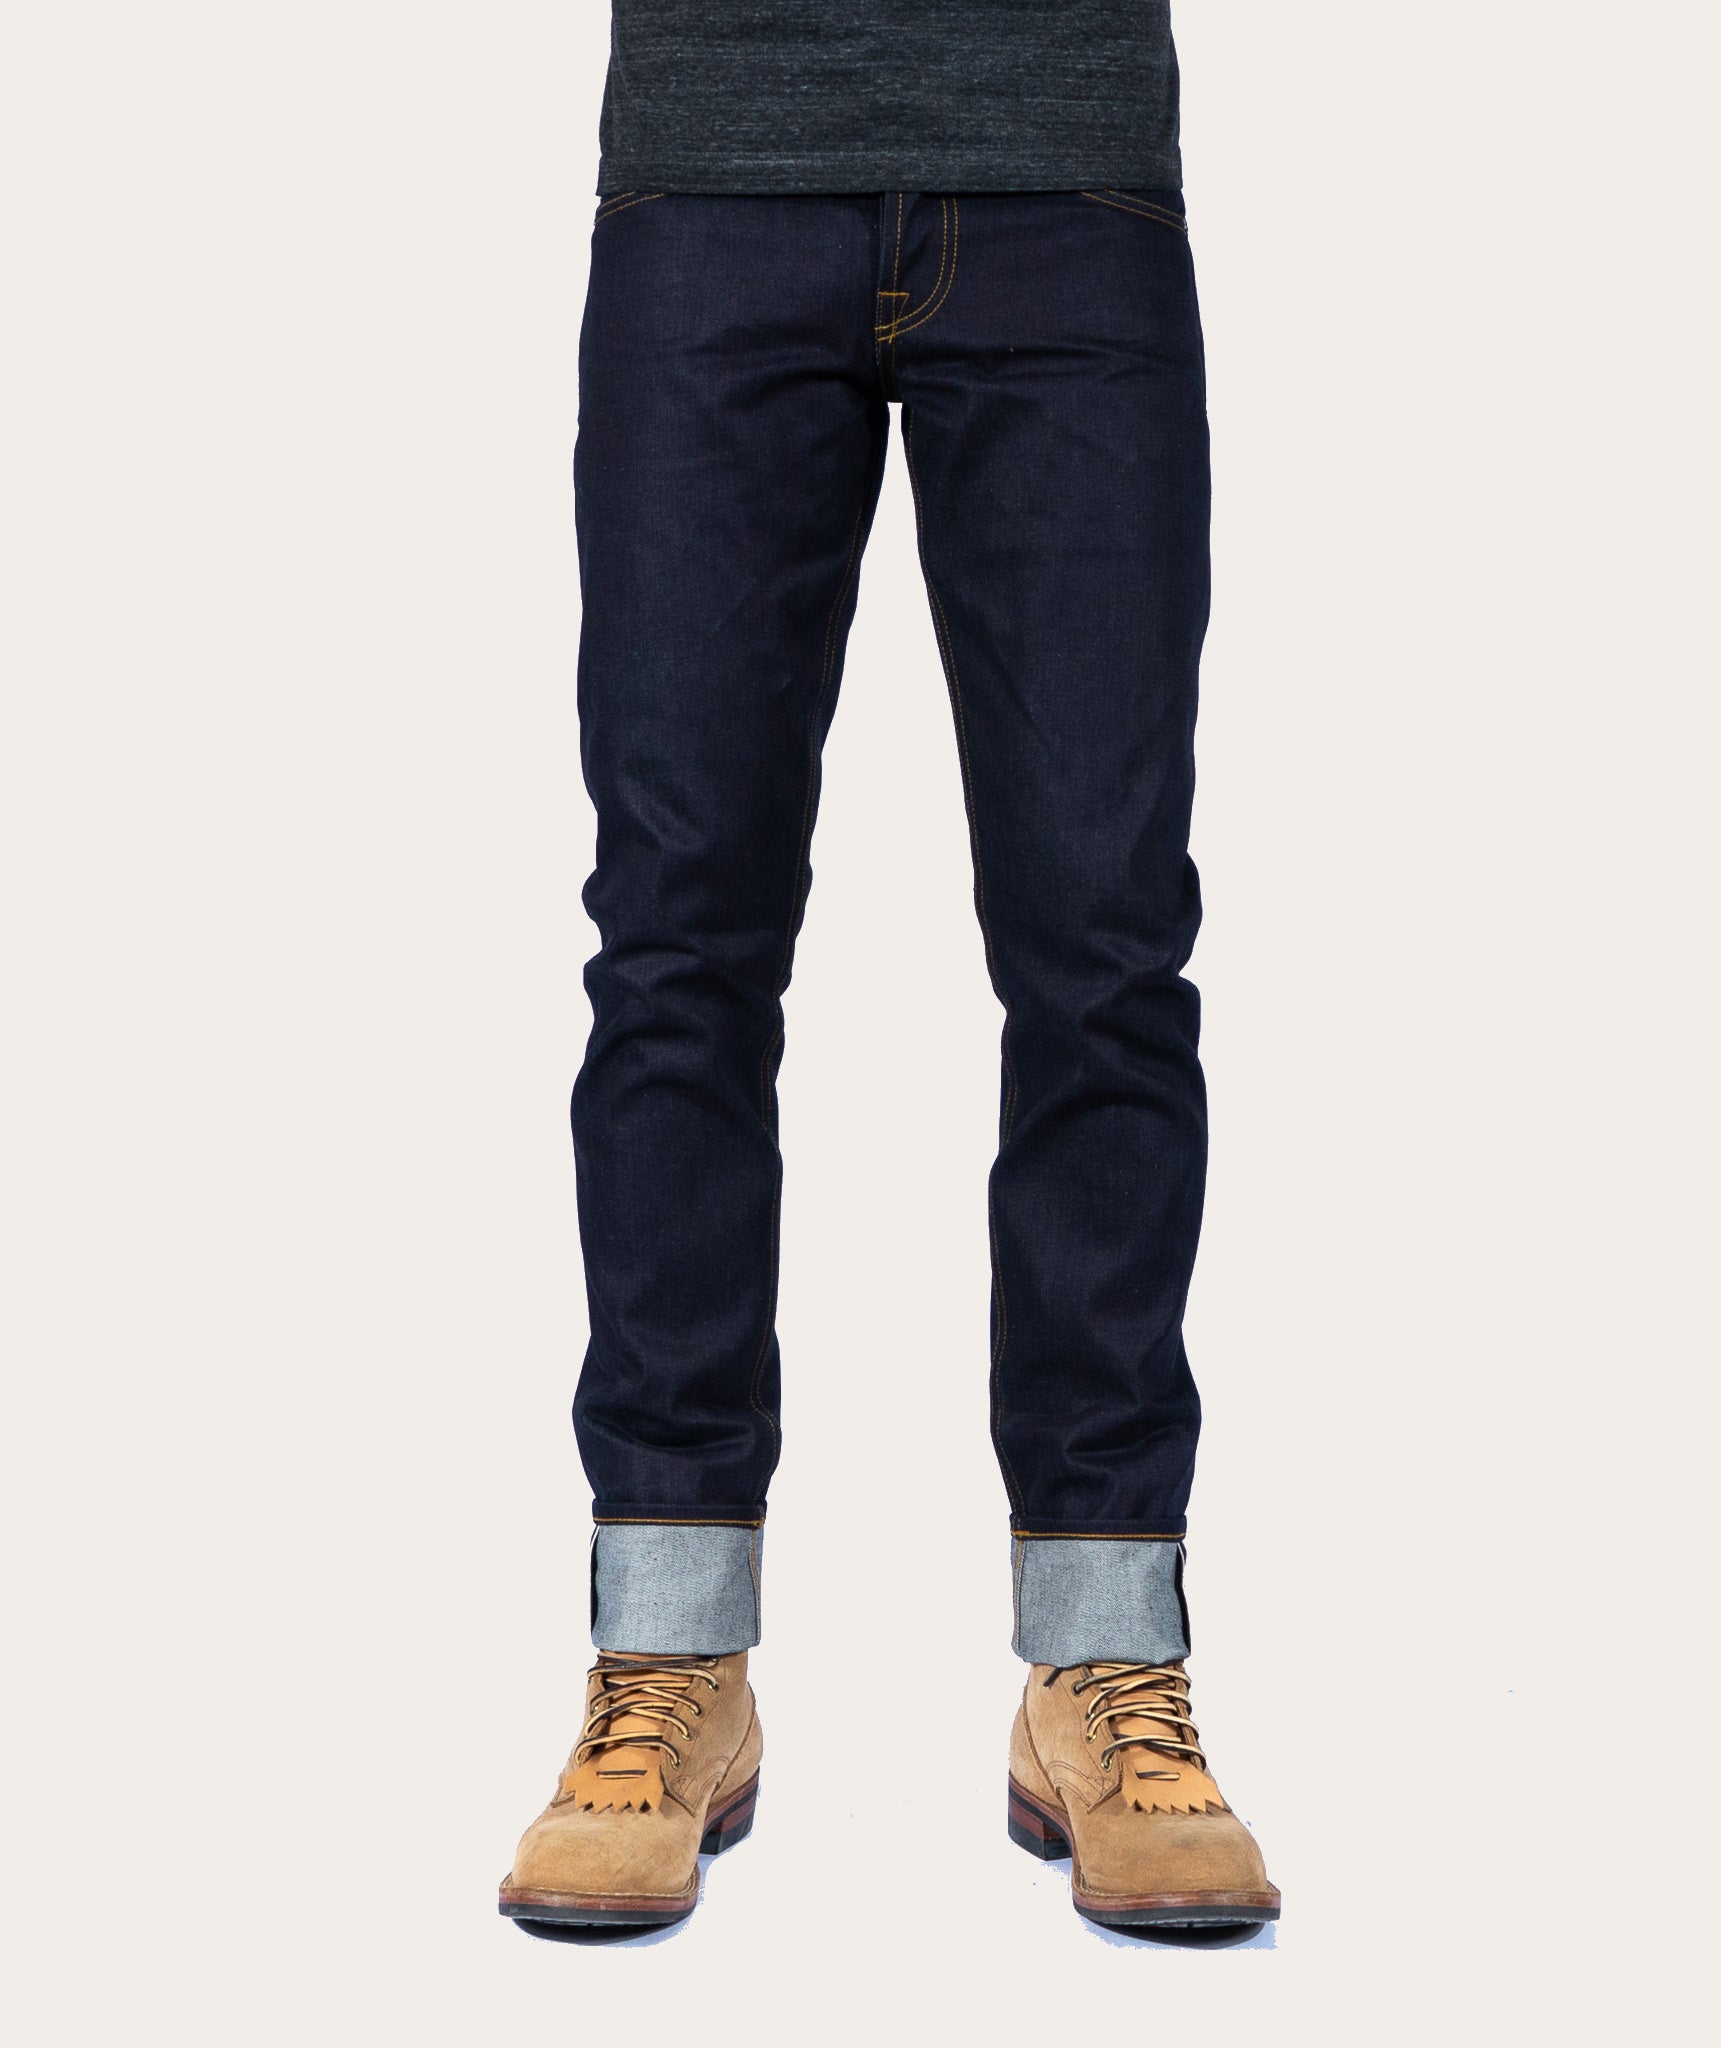 Brave star jeans mens - Gem